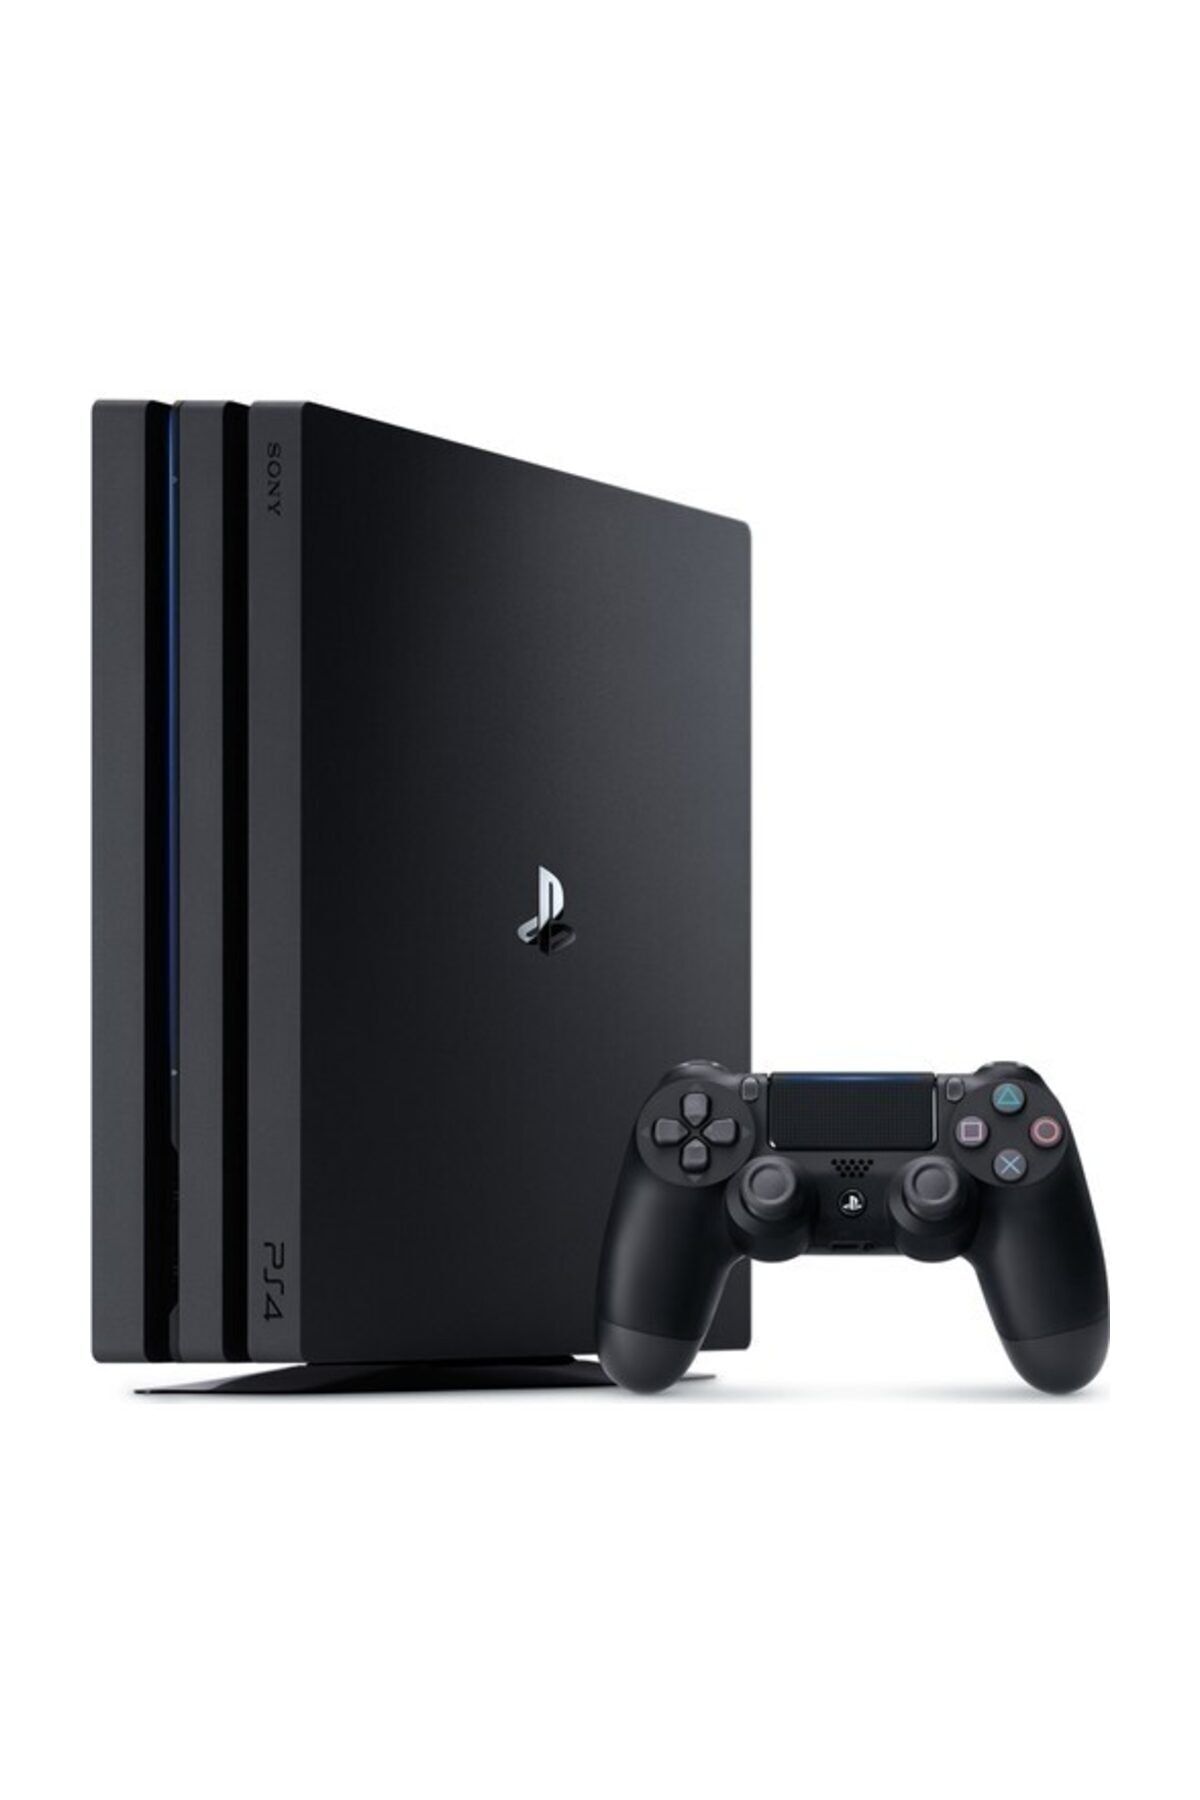 Sony Playstation 4 Pro 1 TB Oyun Konsolu - (Yenilenmiş Ürün)